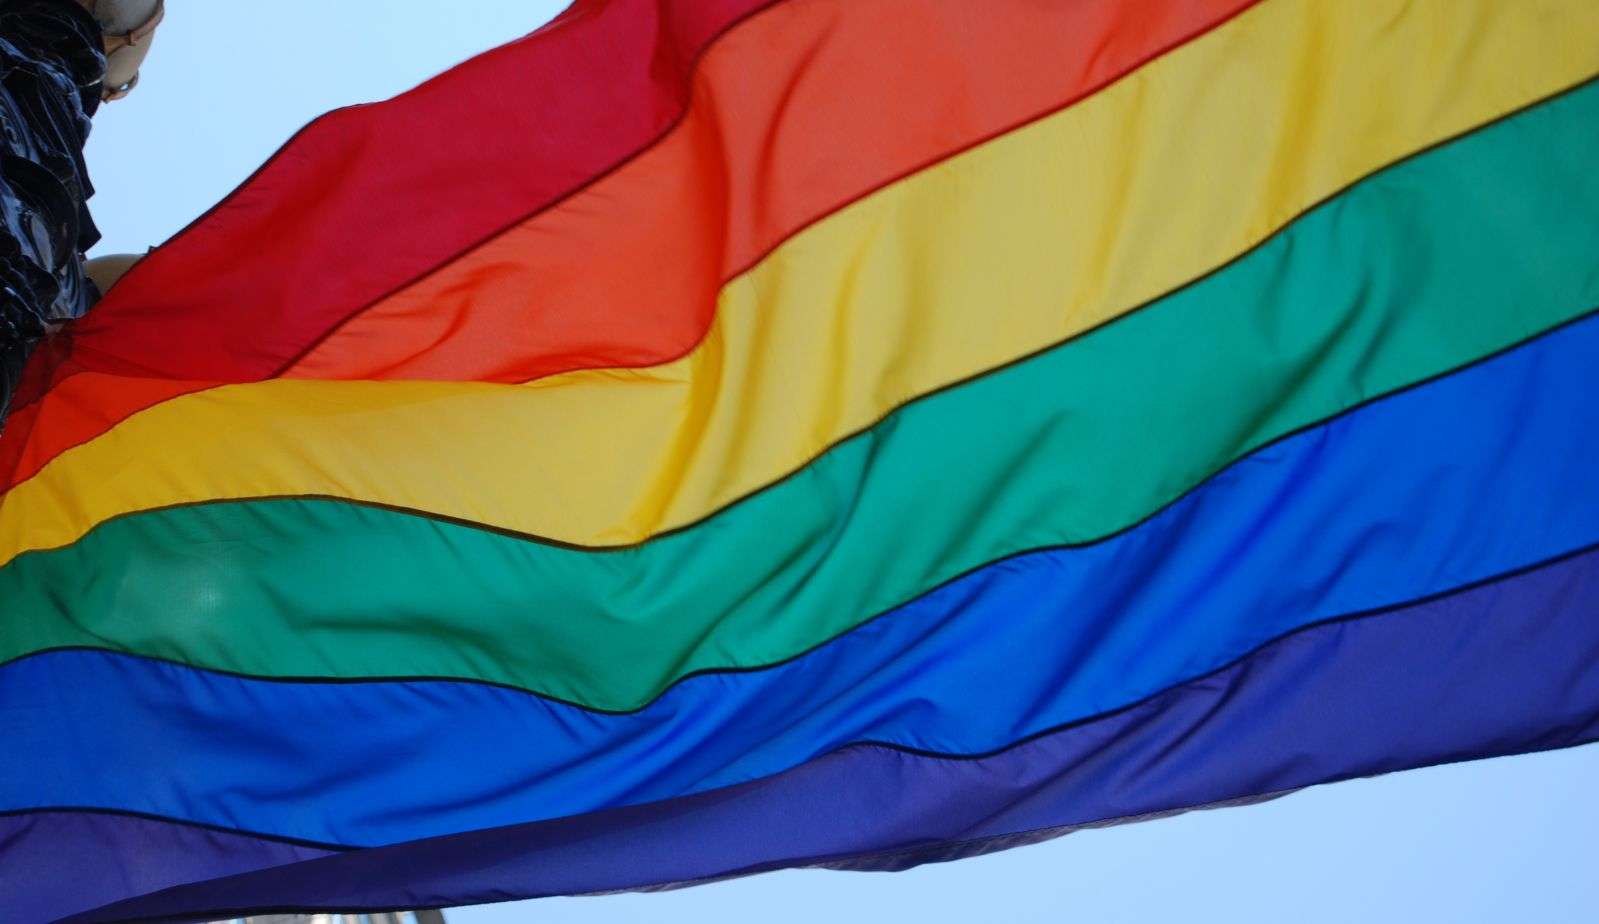 Parada LGBT+ acontece neste domingo em SP com o tema “Políticas Sociais” Lorena Bueri